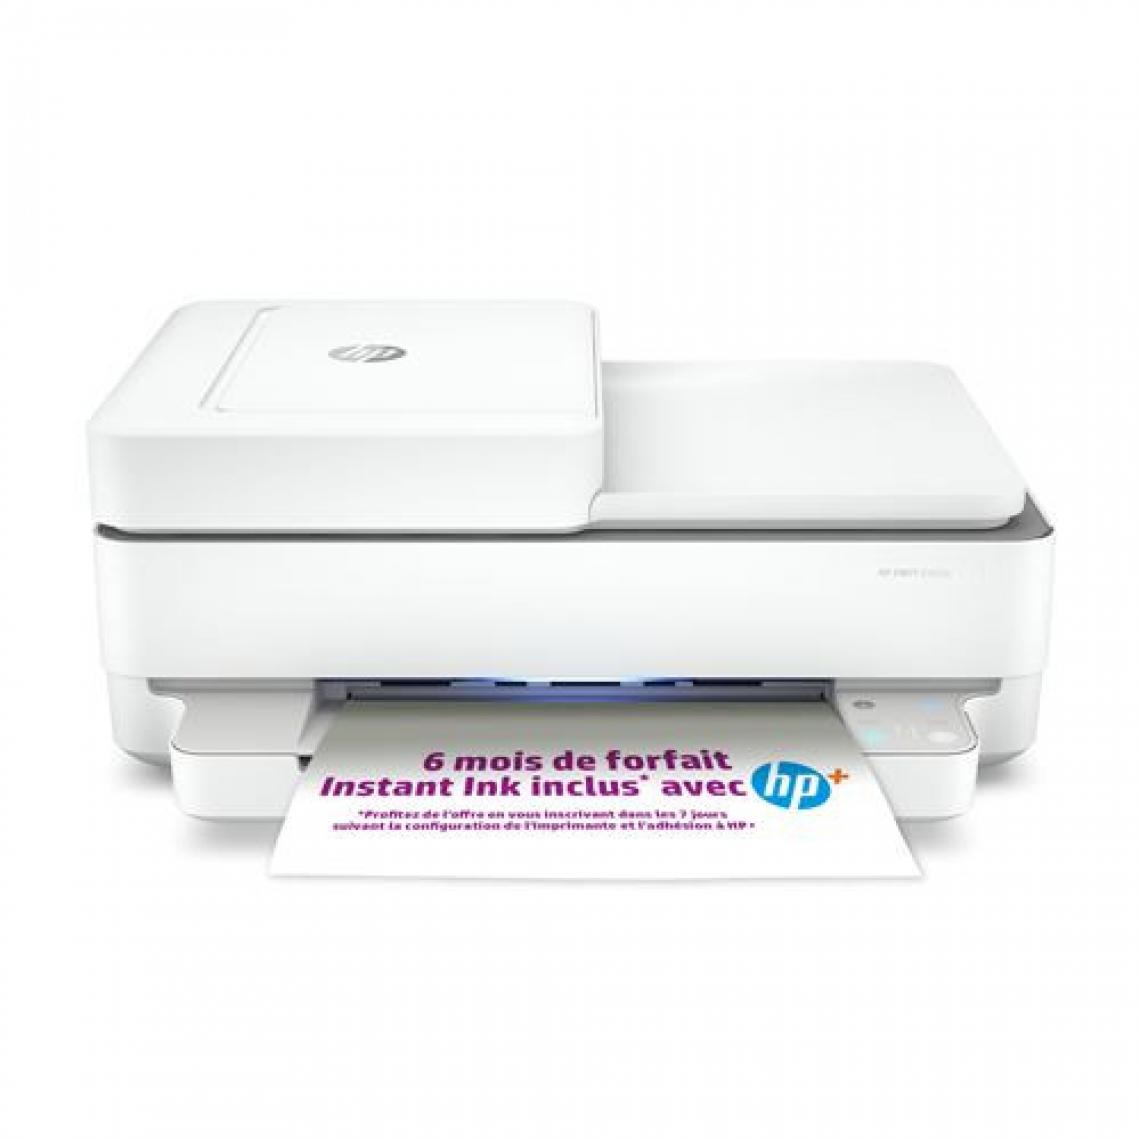 Hp - Imprimante Tout en un HP Envy 6420e Blanc - Imprimante Jet d'encre